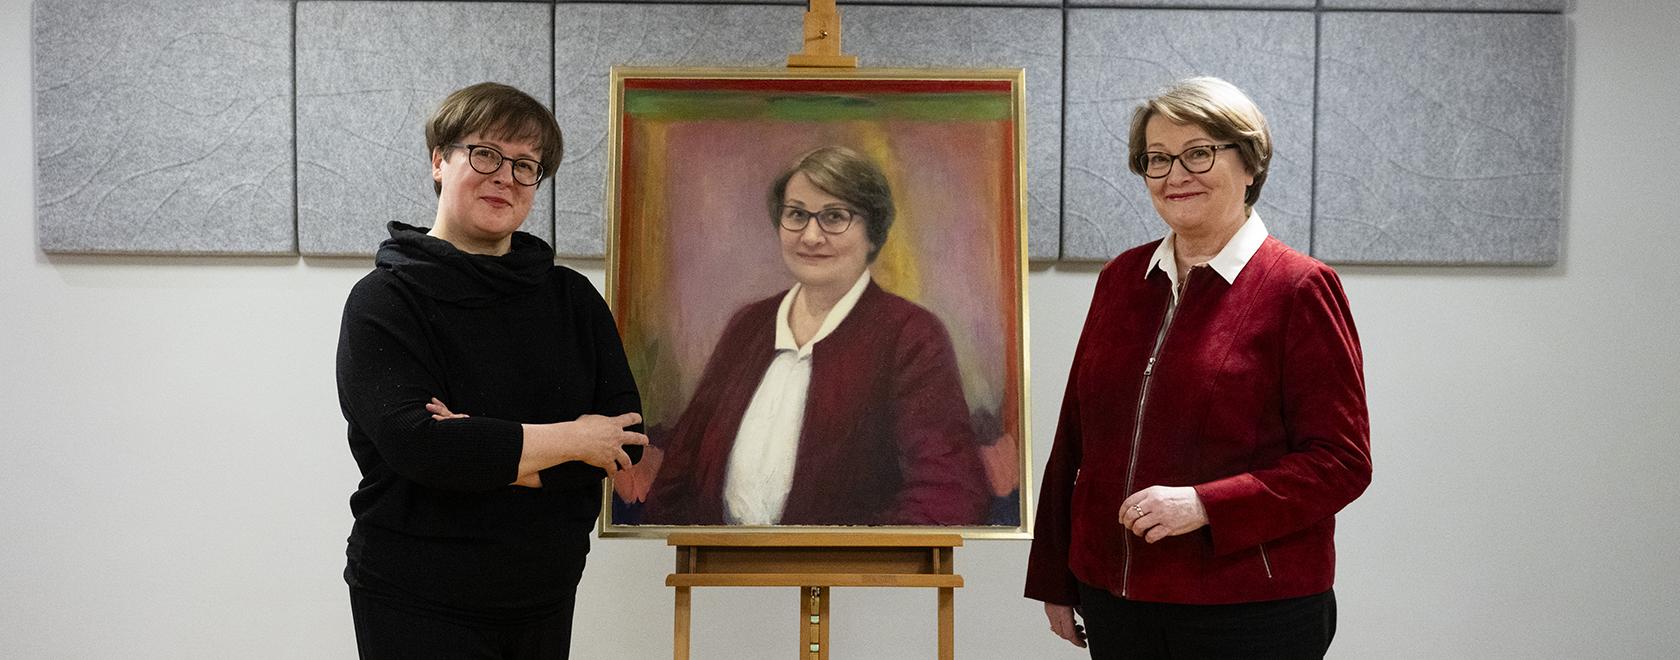 Kaksi naista seisoo oikealla olevaa naista esittävän muotokuvan molemmin puolin.